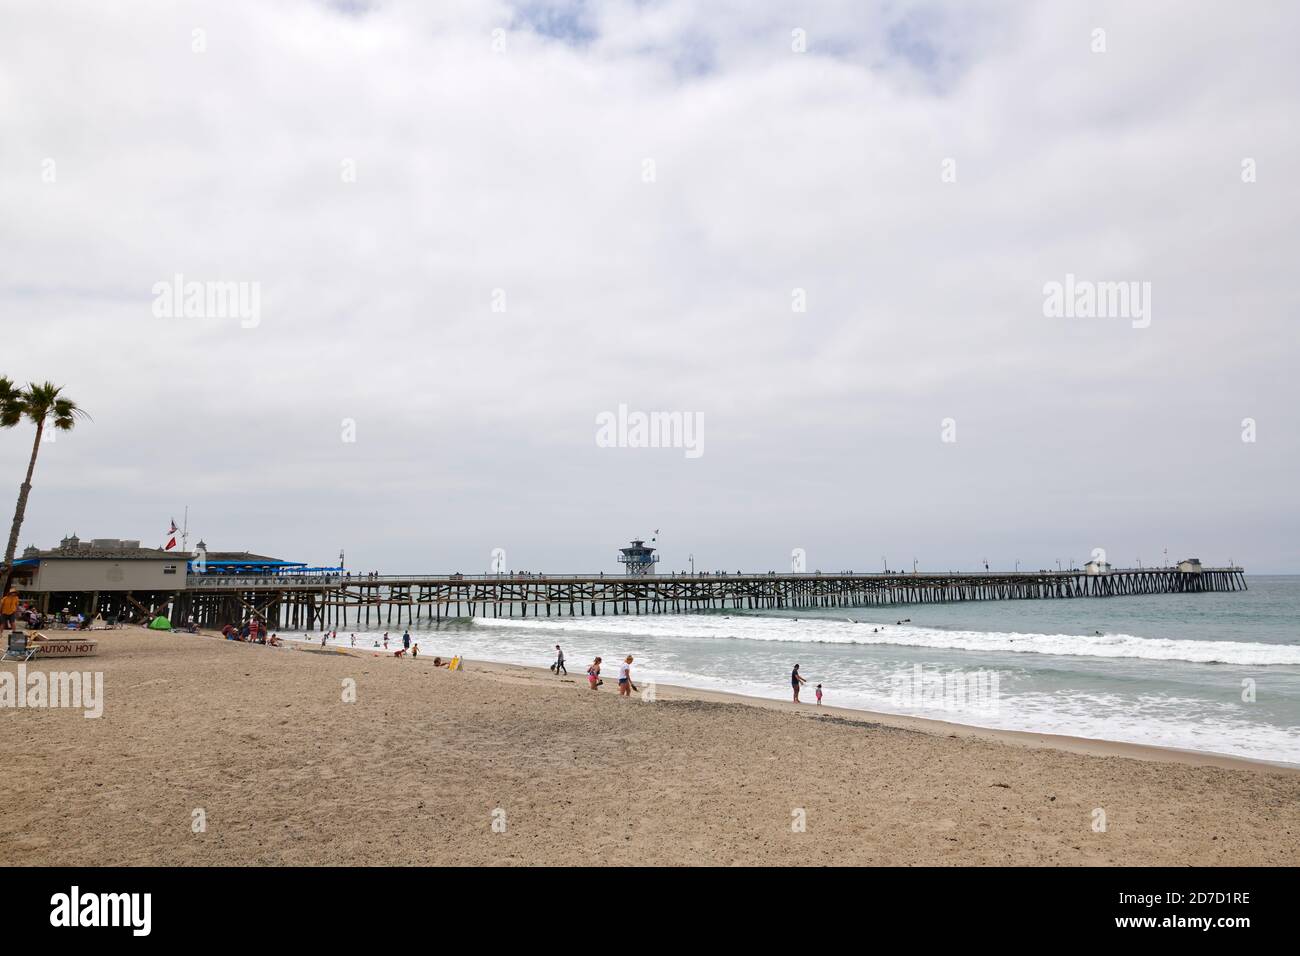 Pier at San Clemente, California, USA Stock Photo